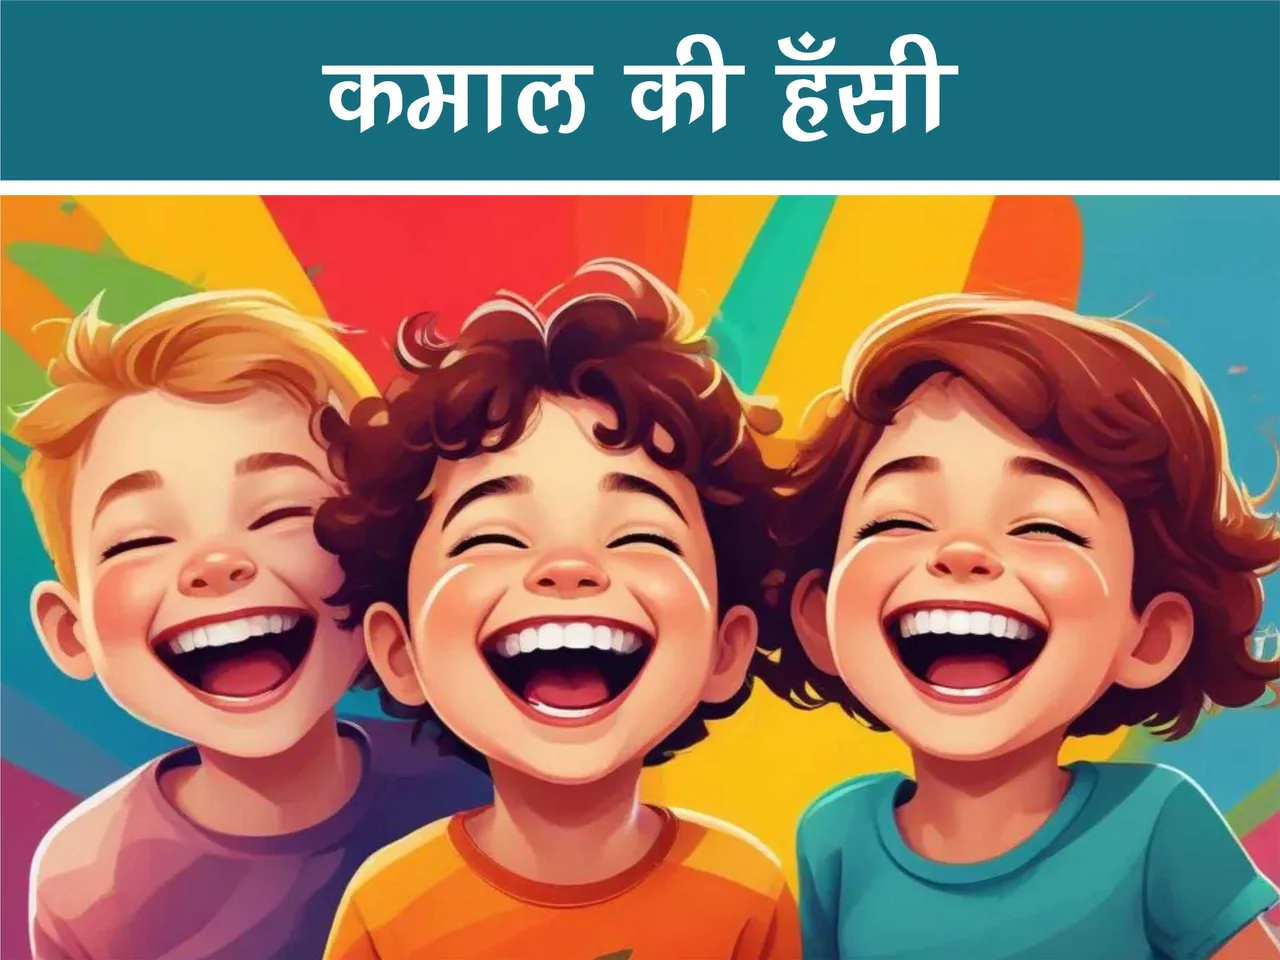 Cartoon image of kids laughing